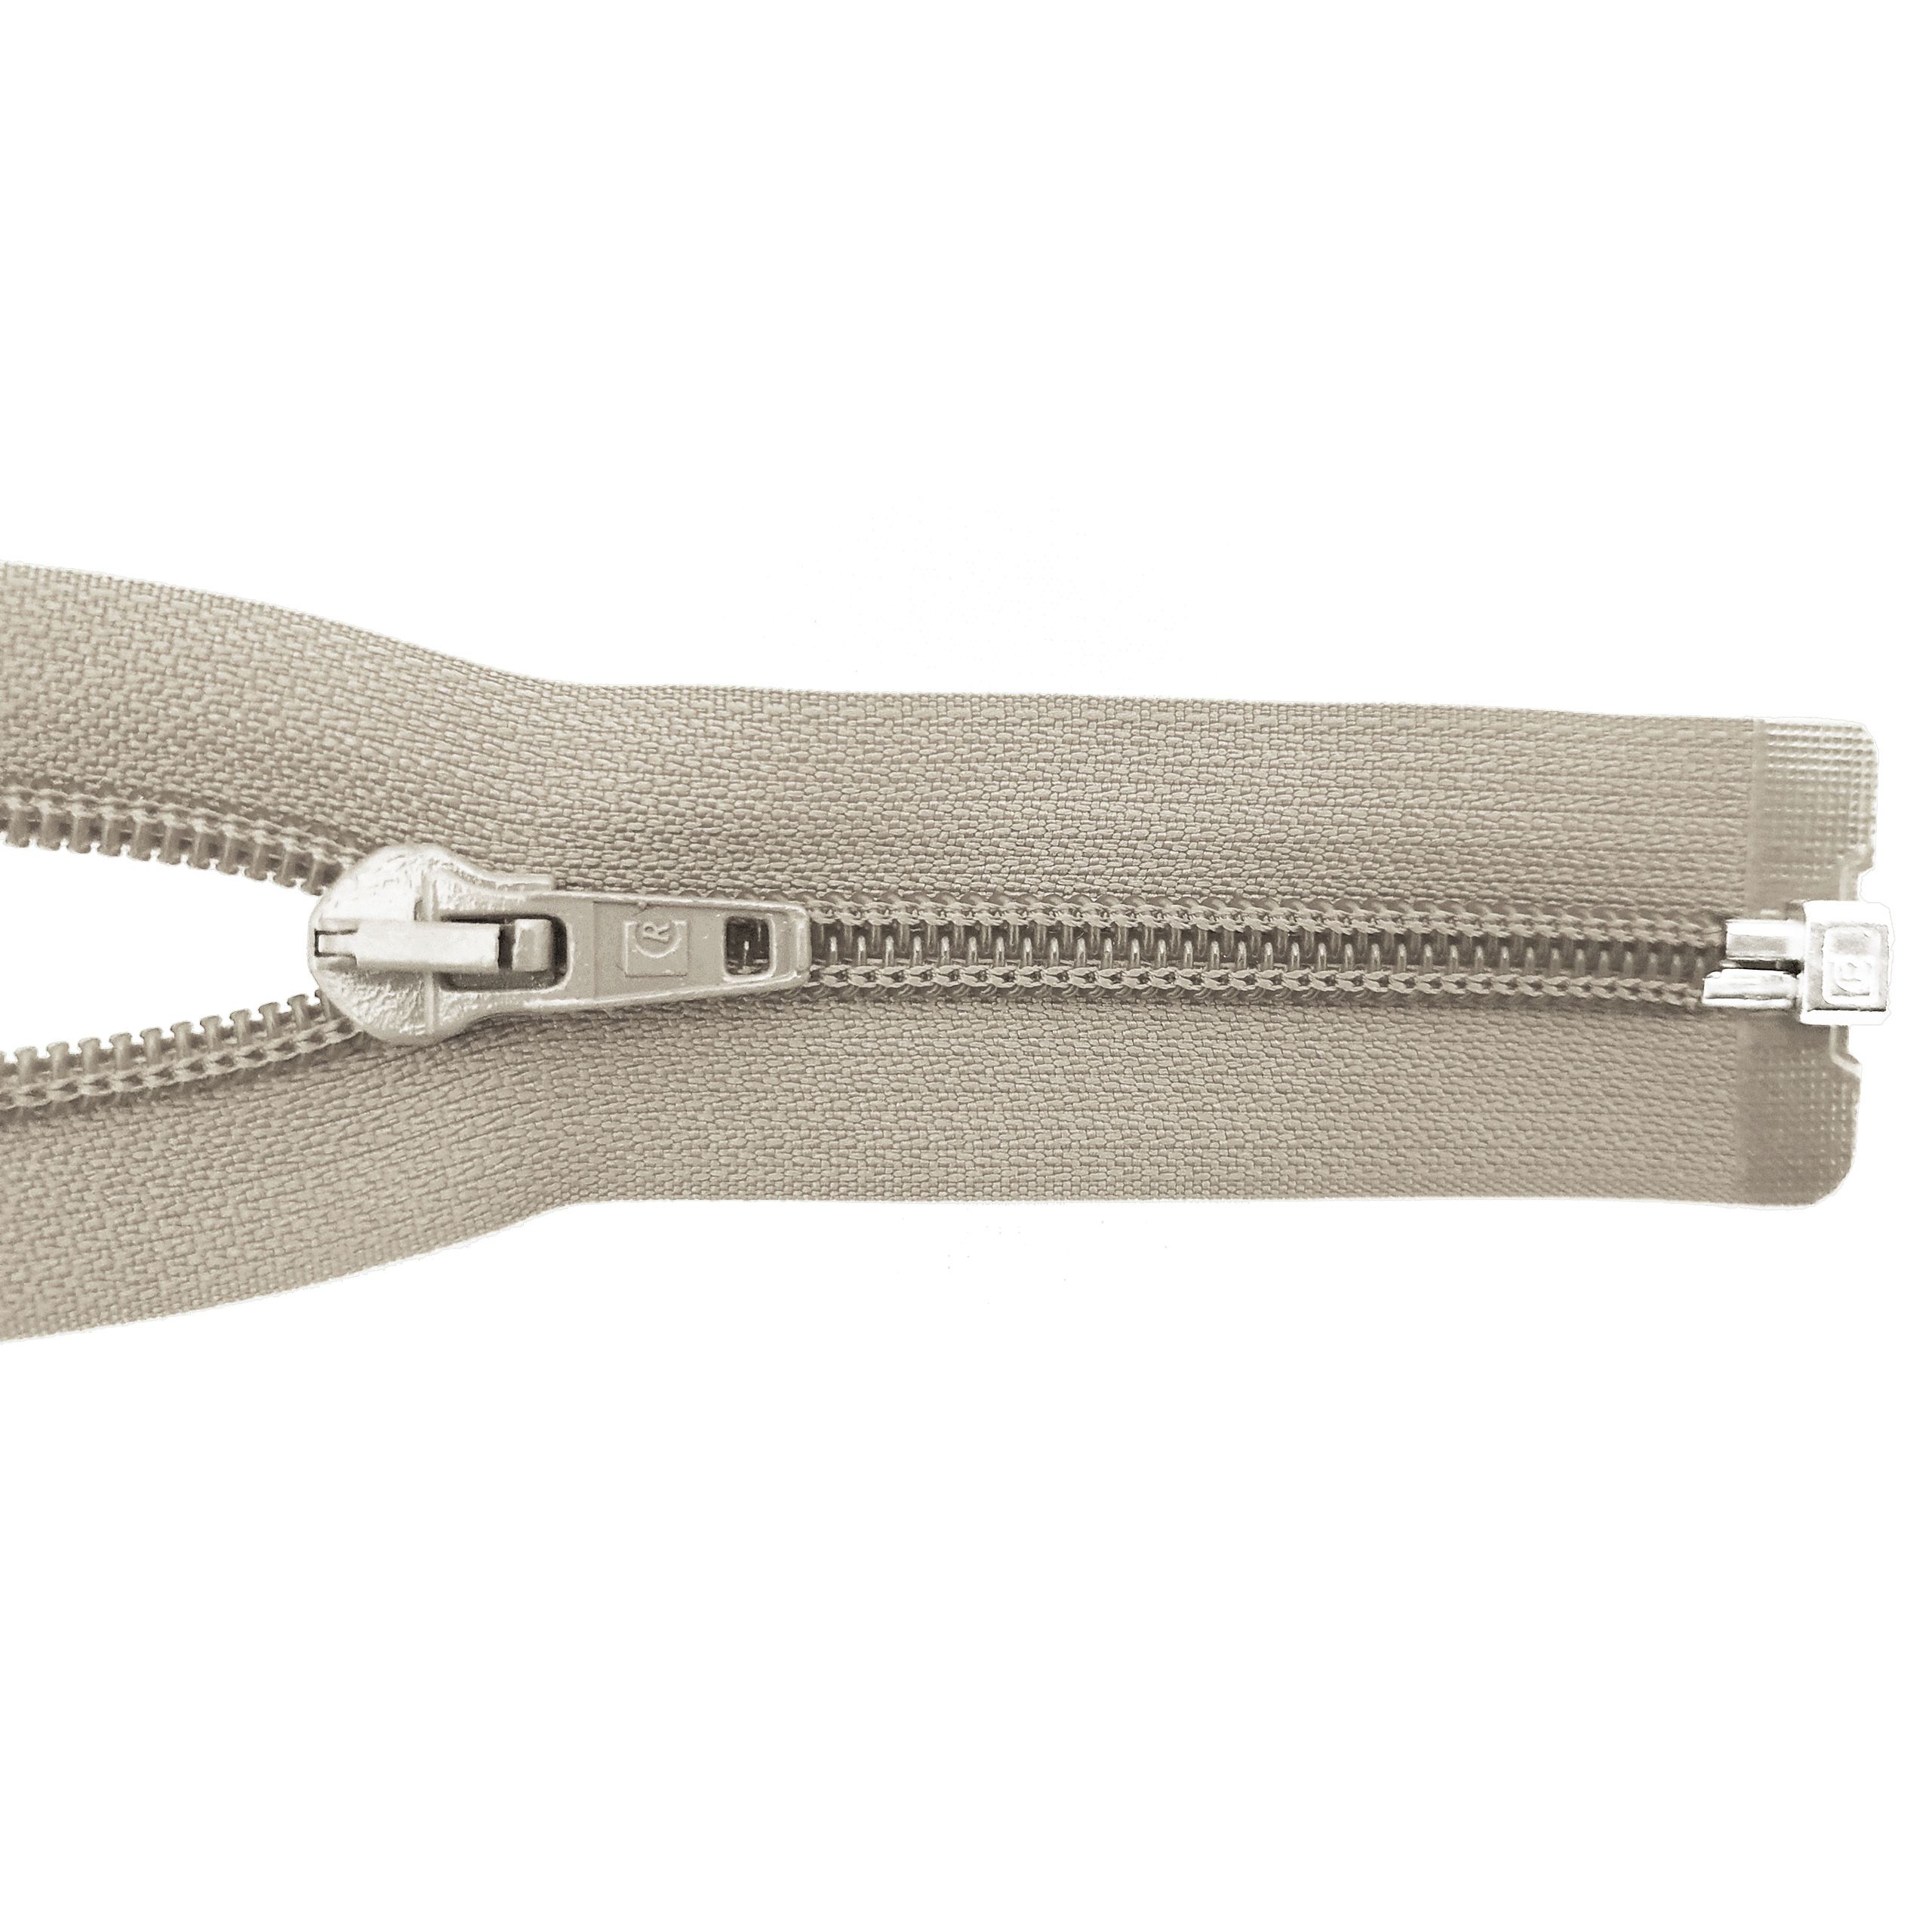 Reißverschluss 100cm, teilbar, Spirale breit, beige-grau, hochwertiger Marken-Reißverschluss von Rubi/Barcelona